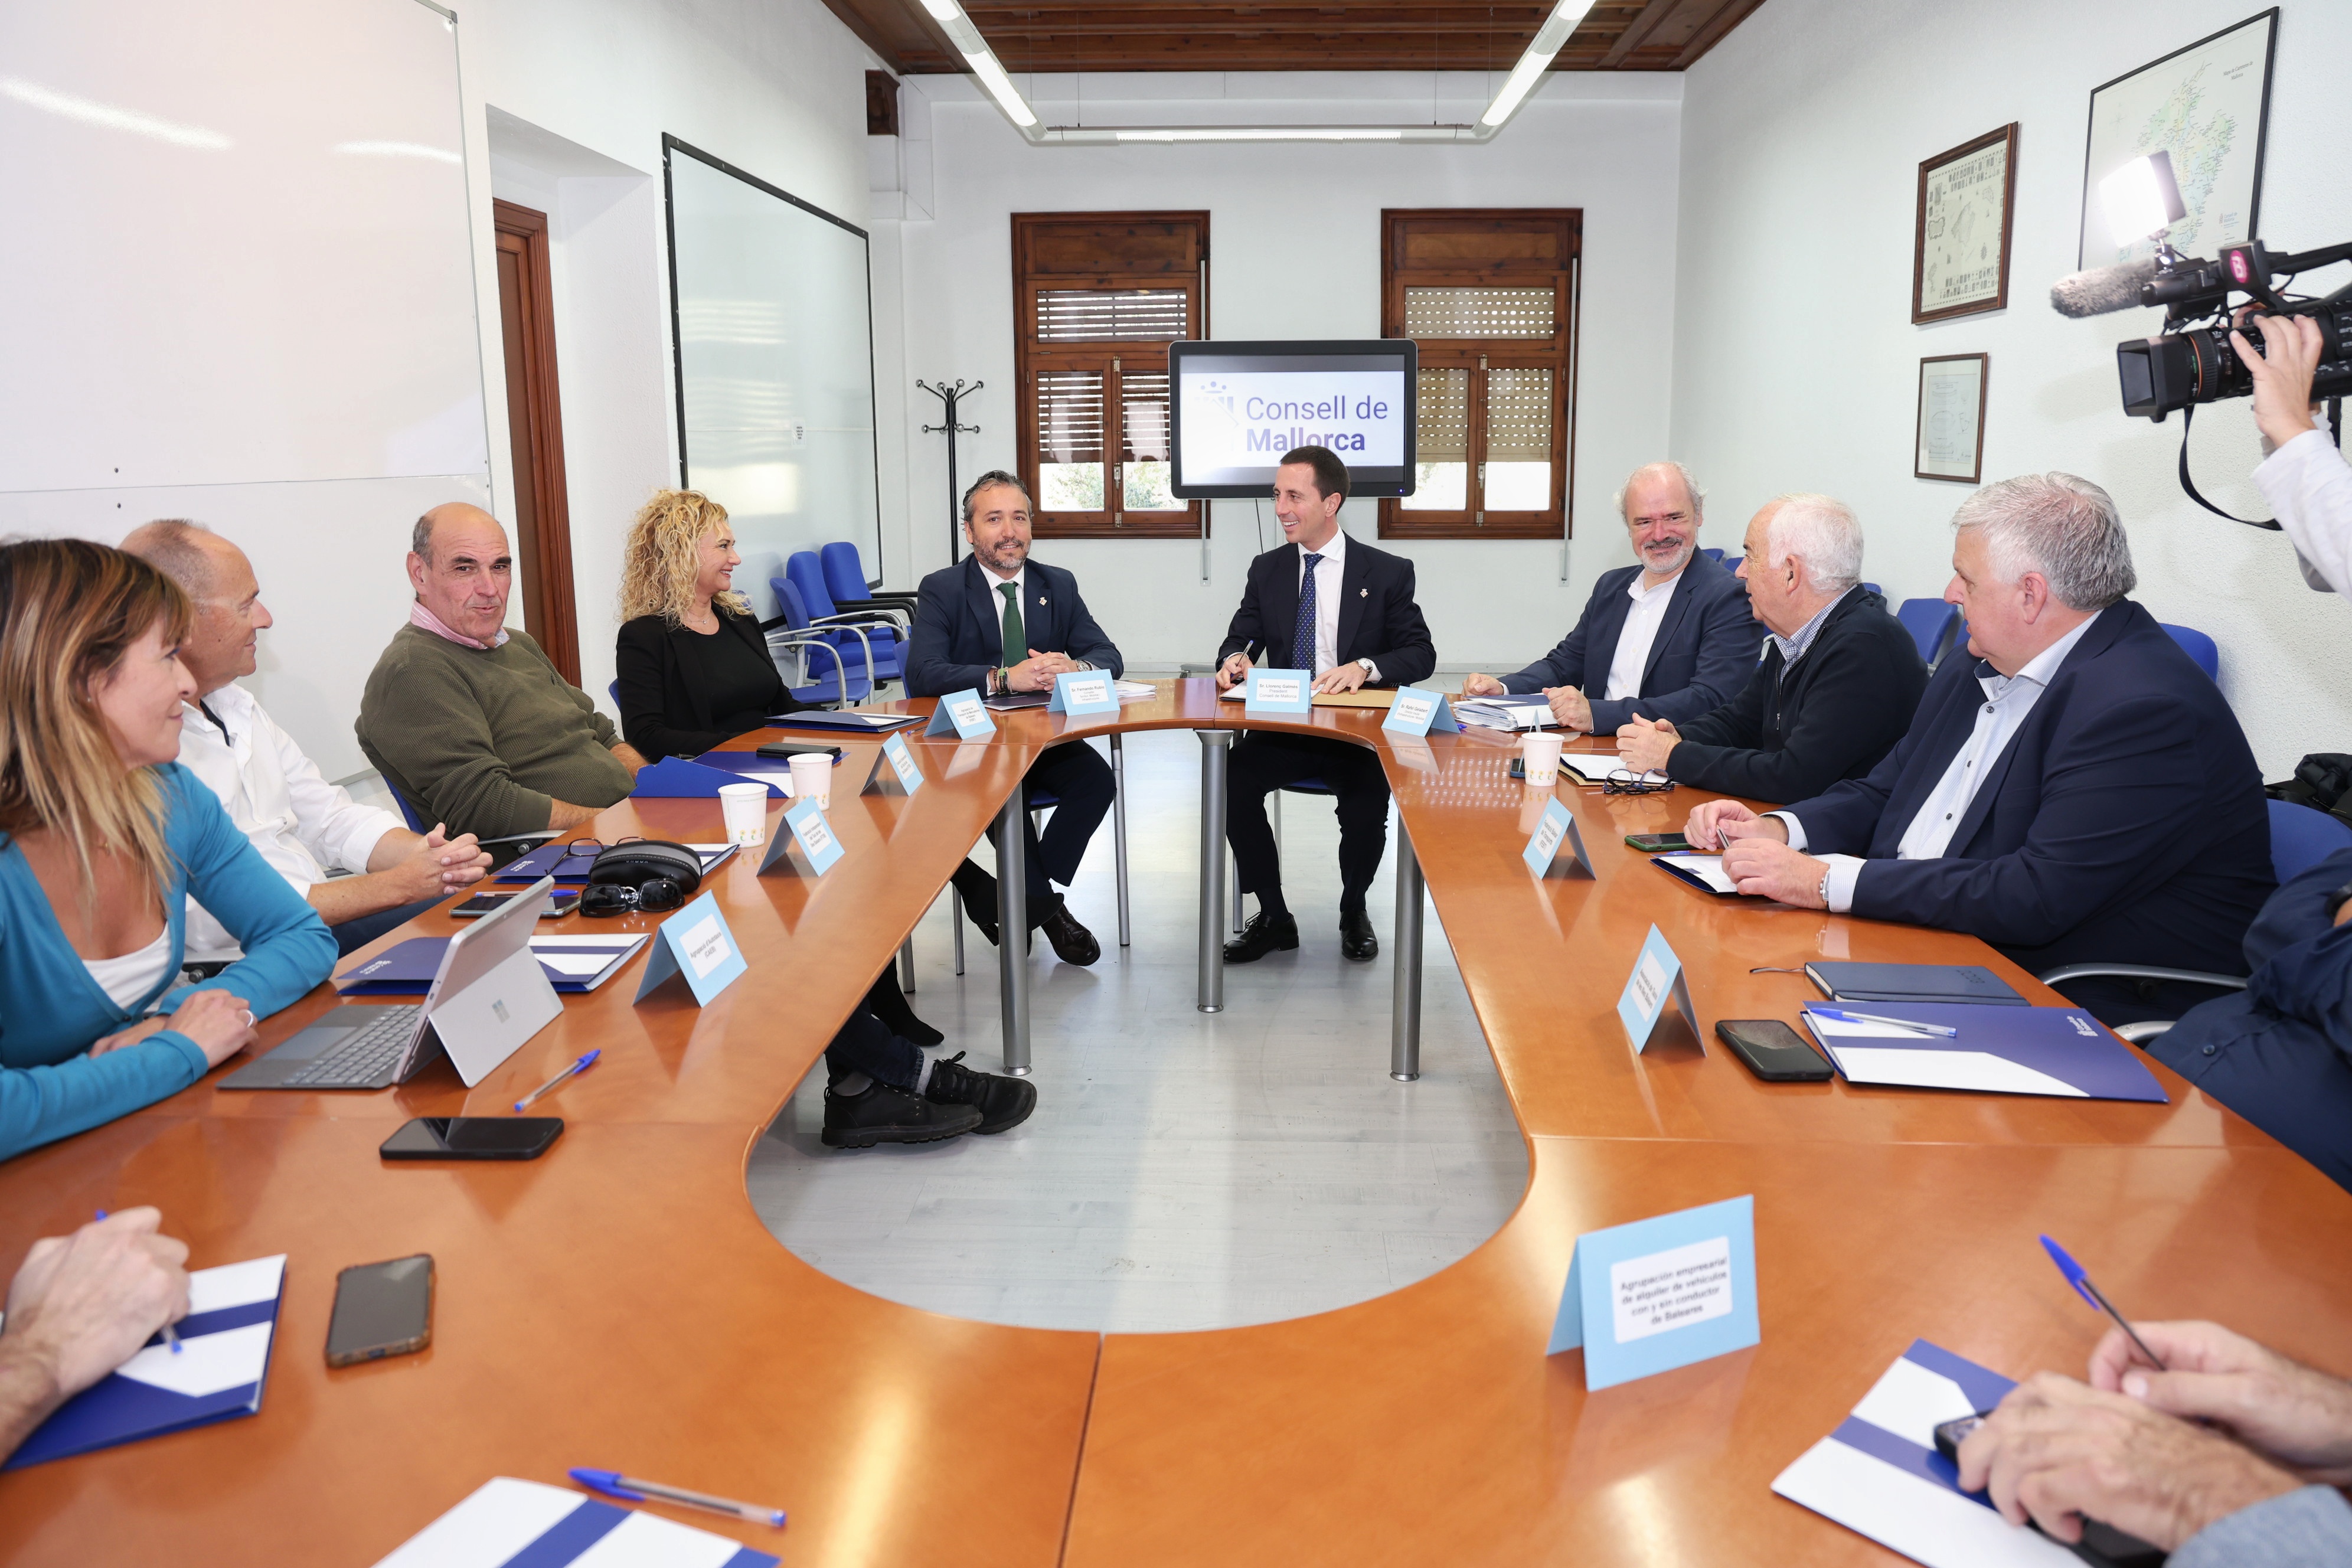 El president Galmés i el conseller de Territori, Mobilitat i Infraestructures, Fernando Rubio, durant la reunió amb el sector del transport.